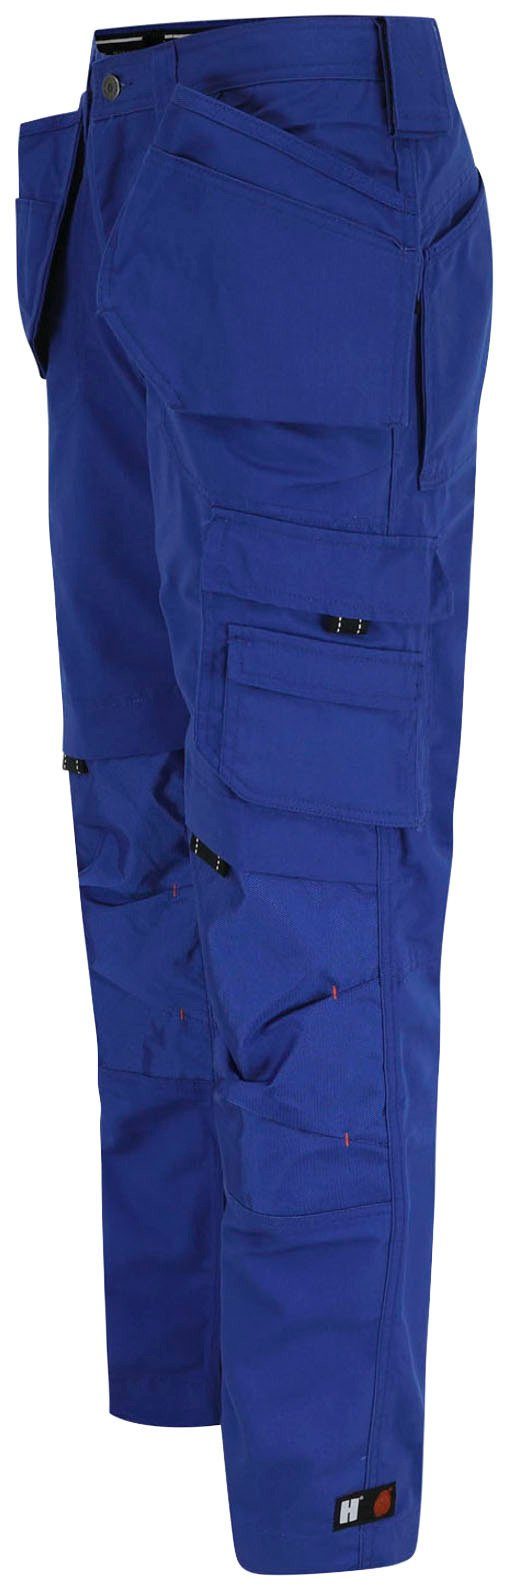 Hose 11 Taschen robust, blau Dagan Arbeitshose Wasserabweisend, (inkl. Nageltaschen) Herock